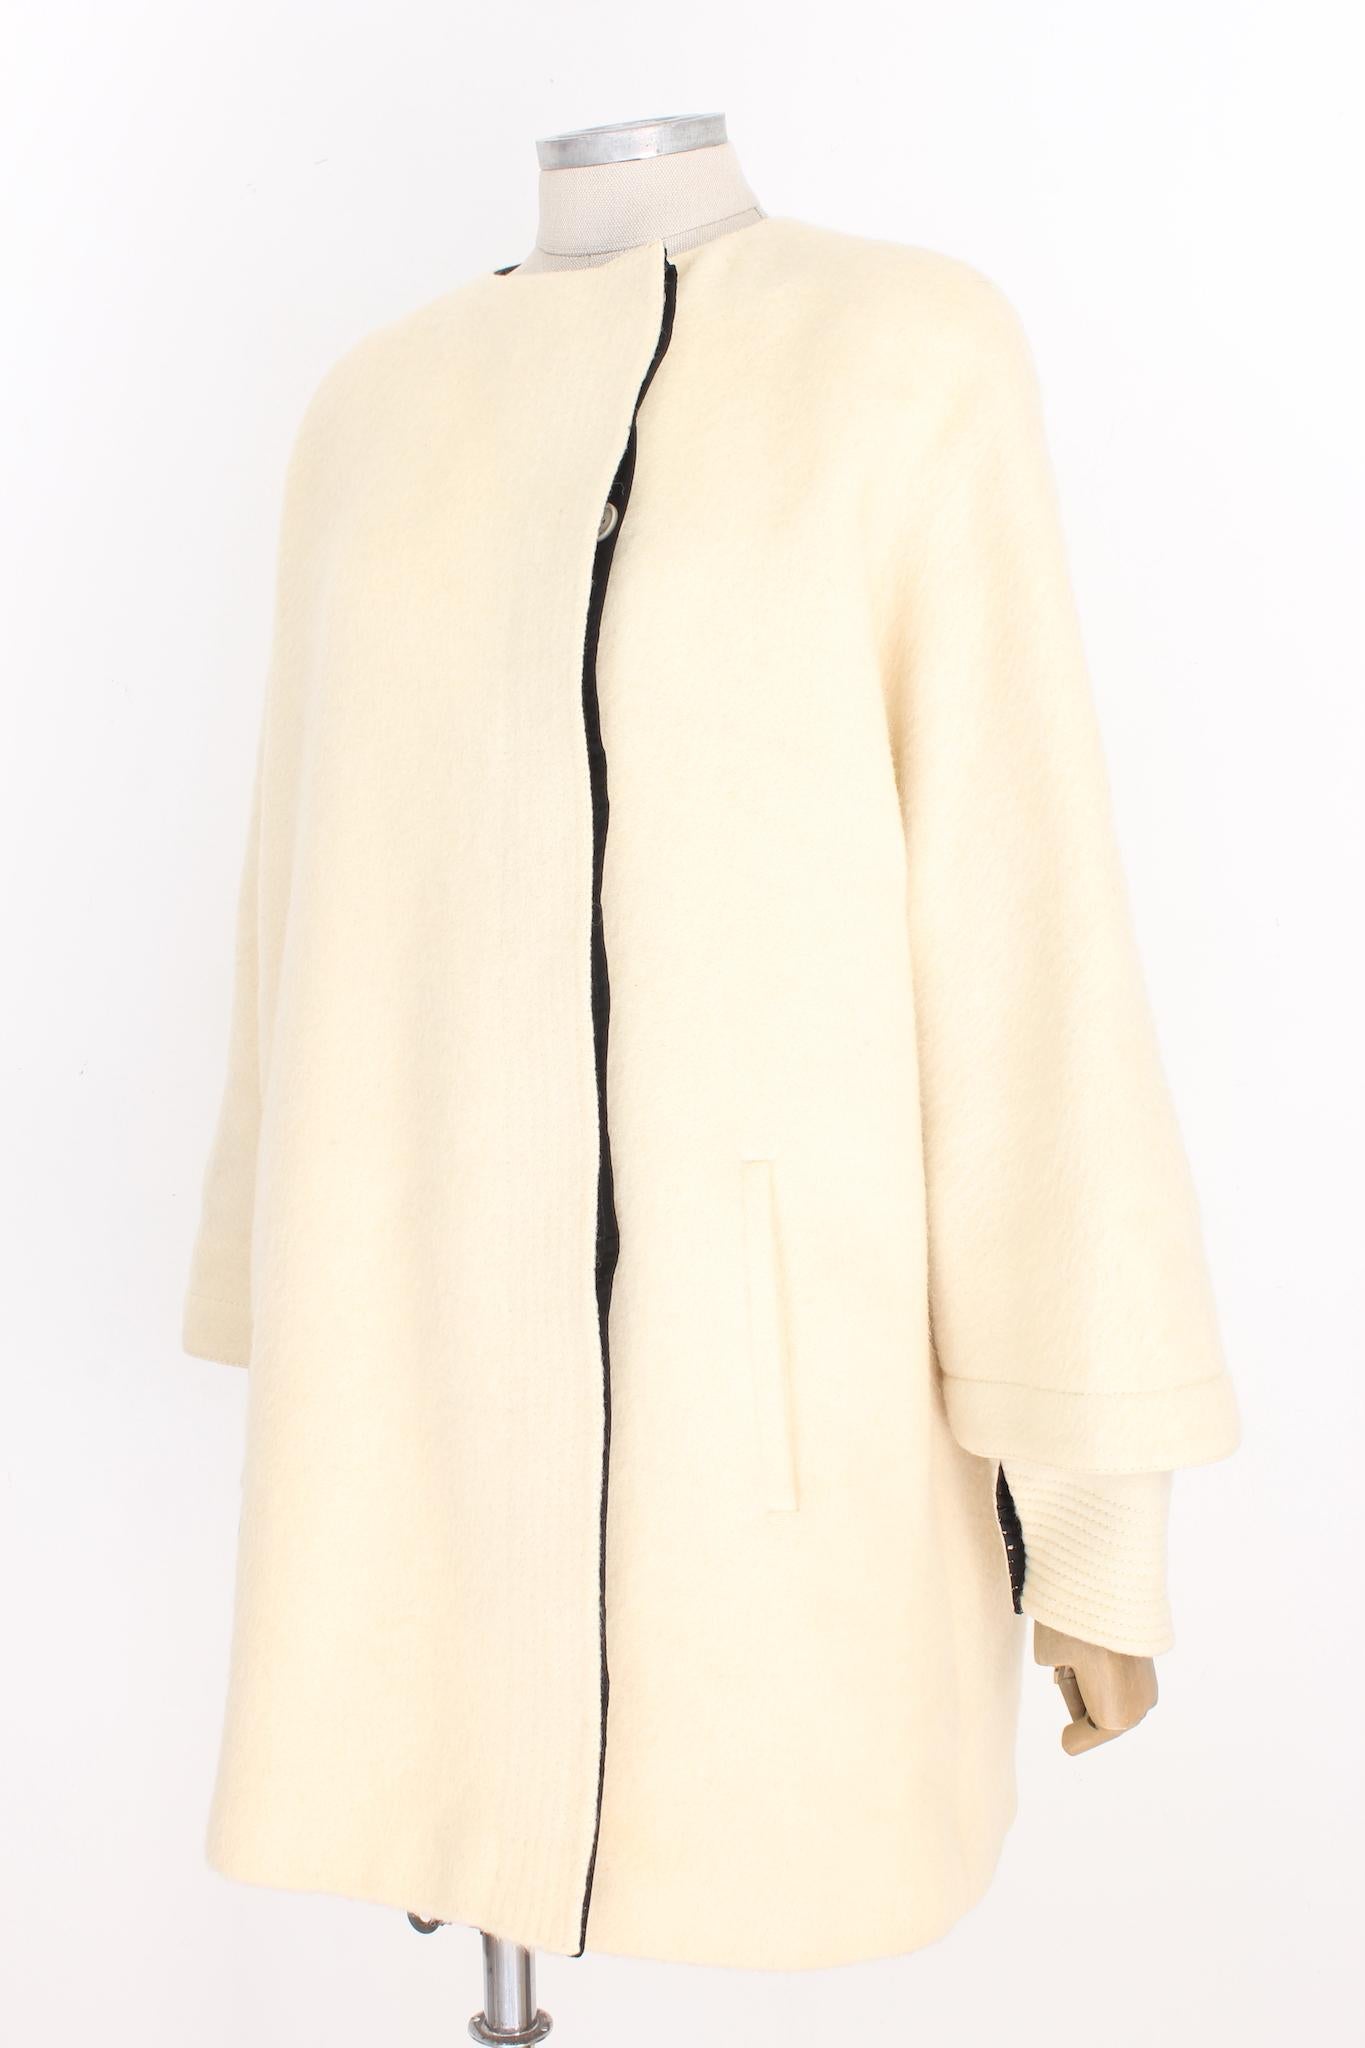 Gianfranco Ferre Beige Wool Oversize Vintage Coat 80s 1